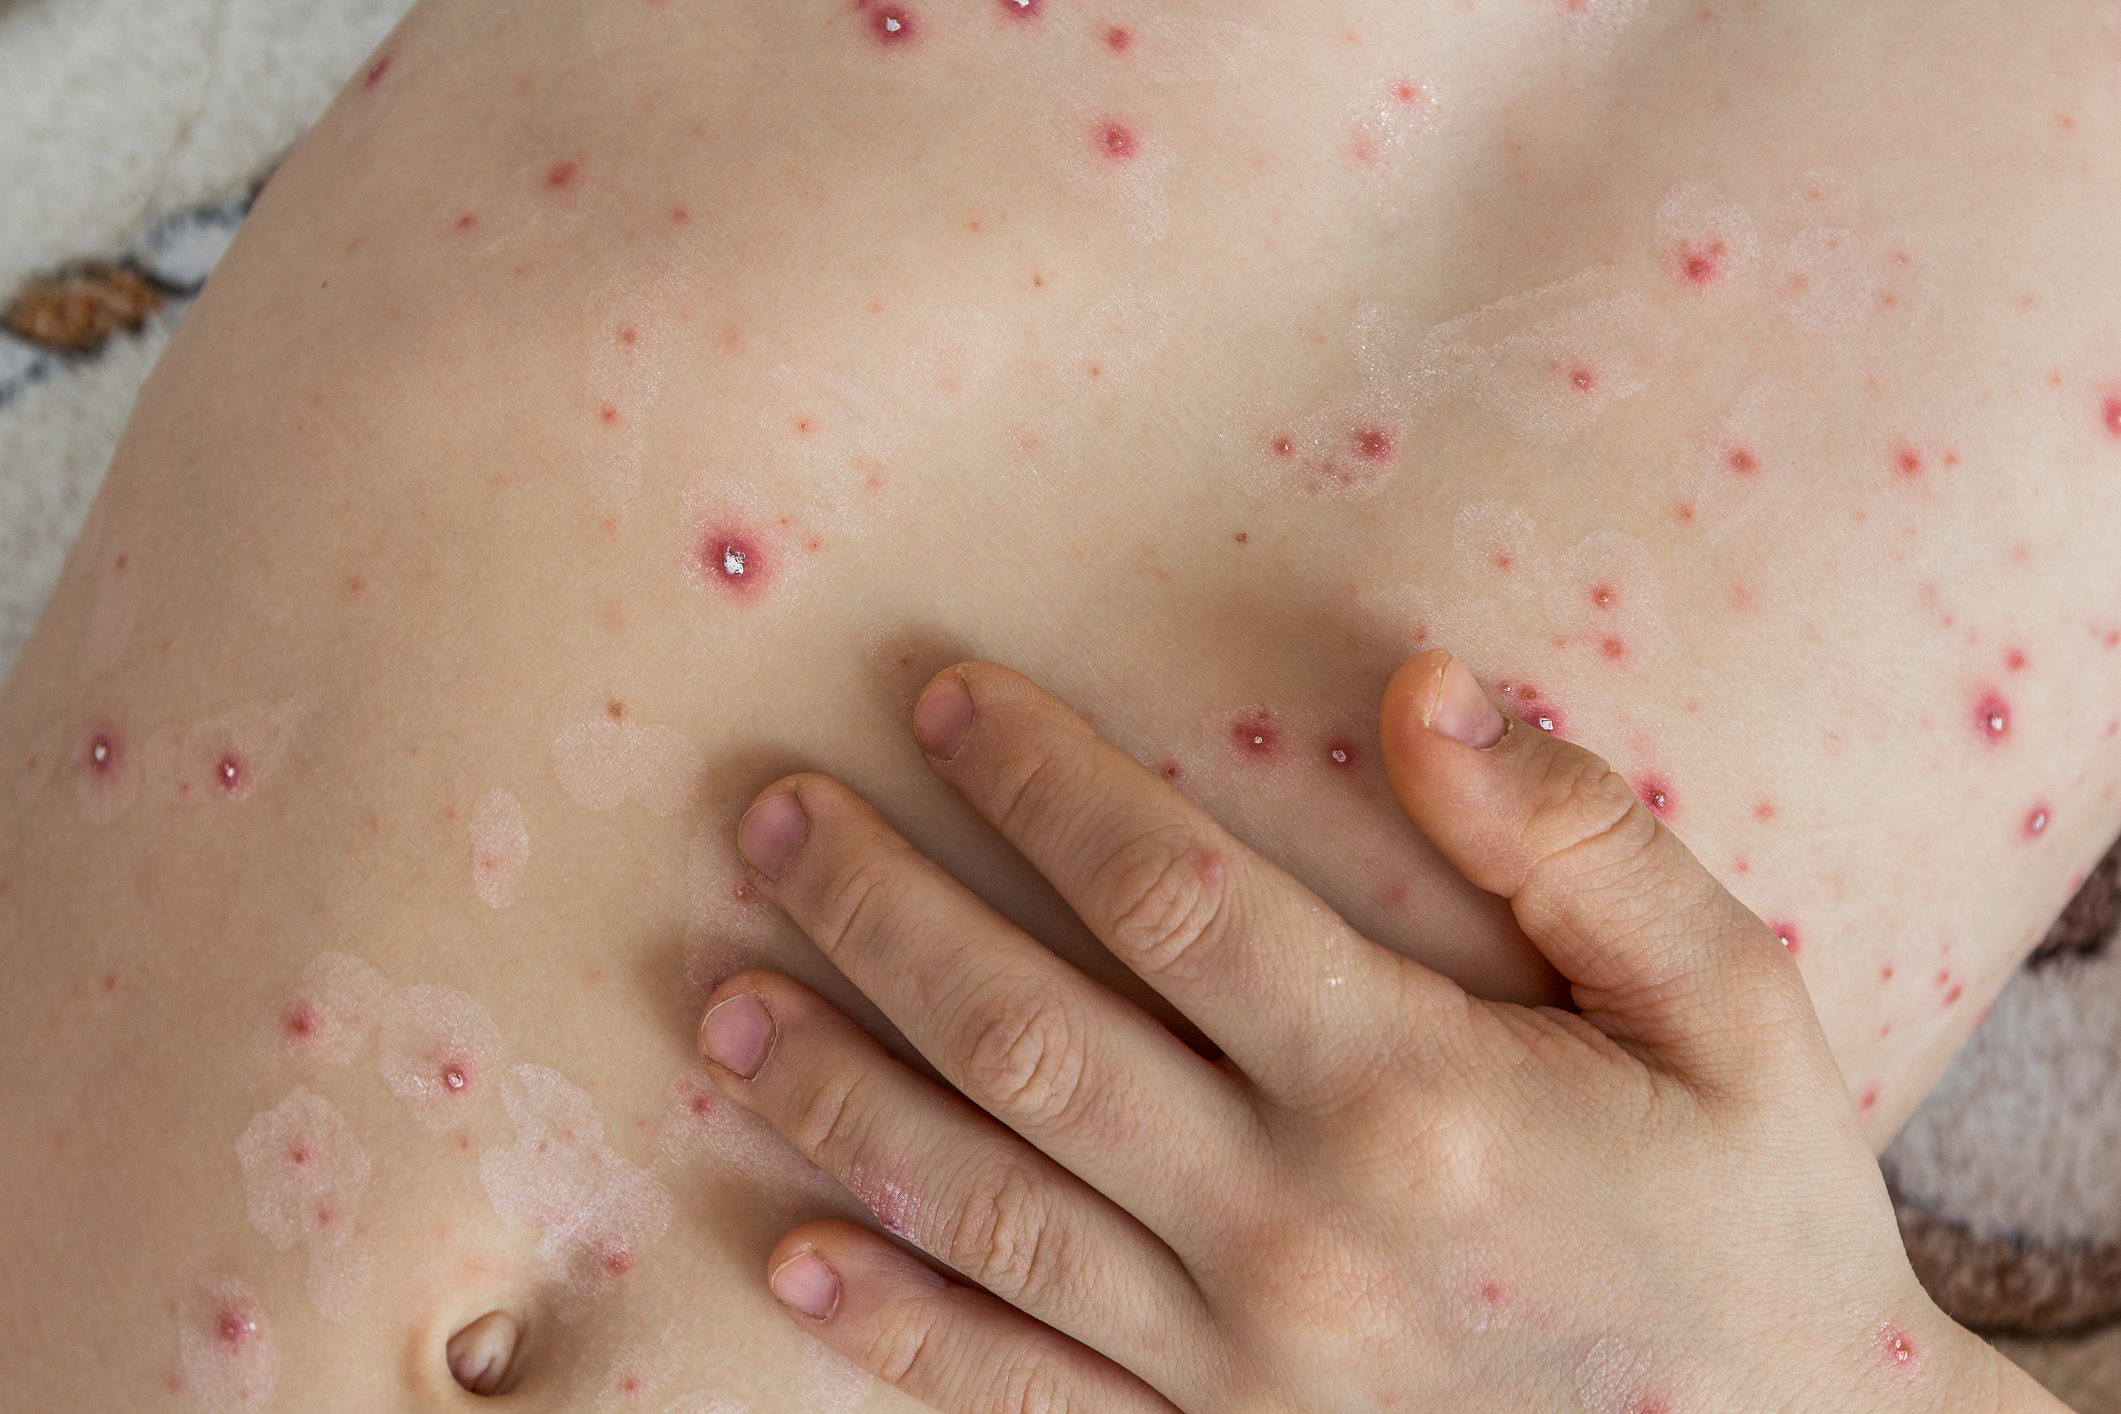 Tot mai mulţi pacienţi cu varicelă în Timiş. În ultimii doi ani nu a fost înregistrat niciun caz